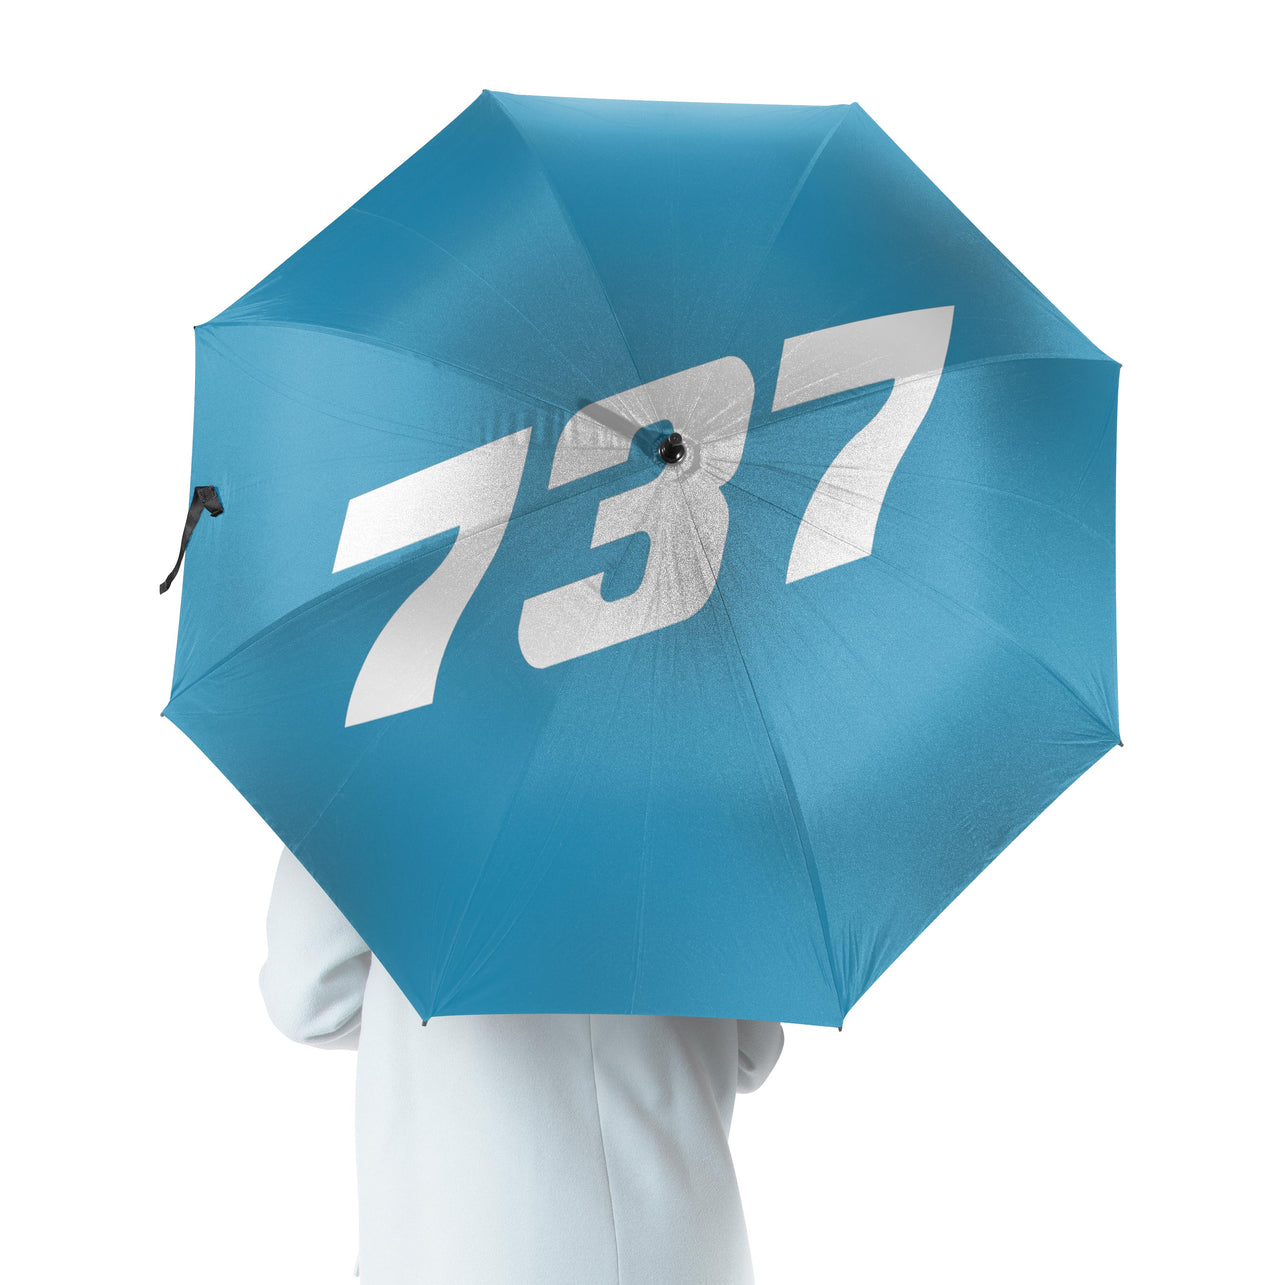 737 Flat Text Designed Umbrella